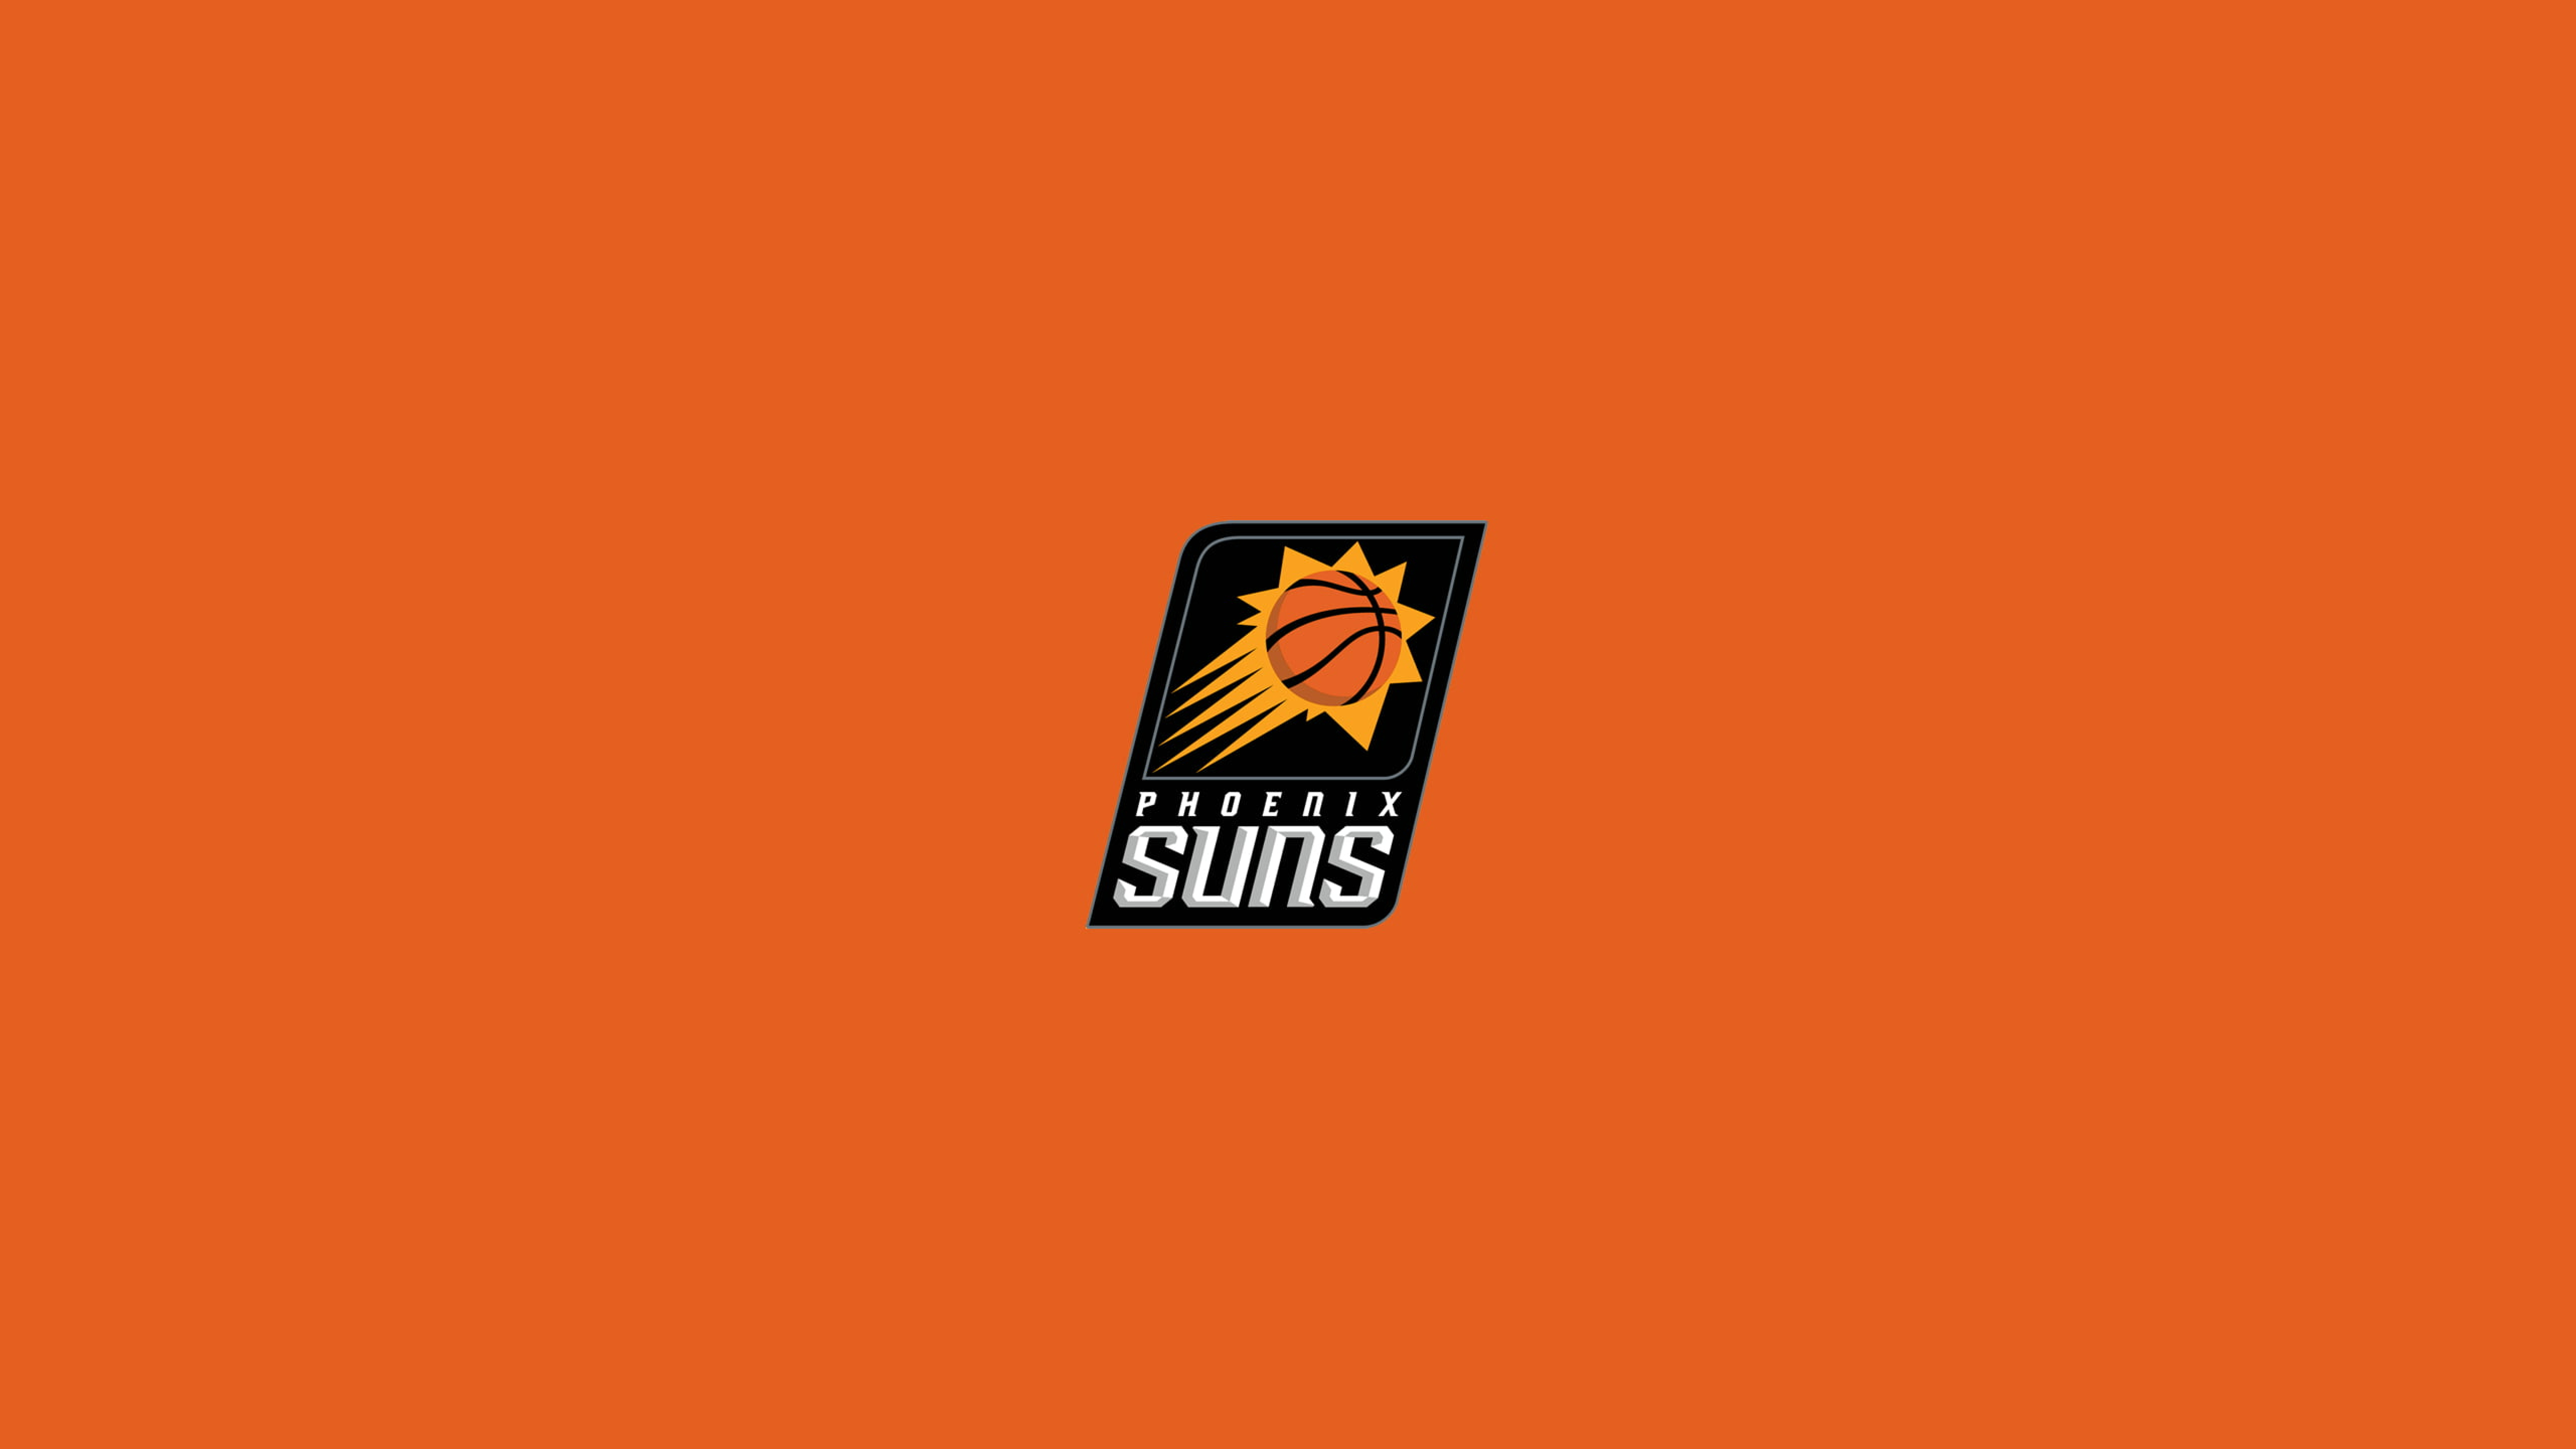 7680x4320 NBA Phoenix Suns Logo 2021 8K Wallpaper, HD Minimalist 4K ...